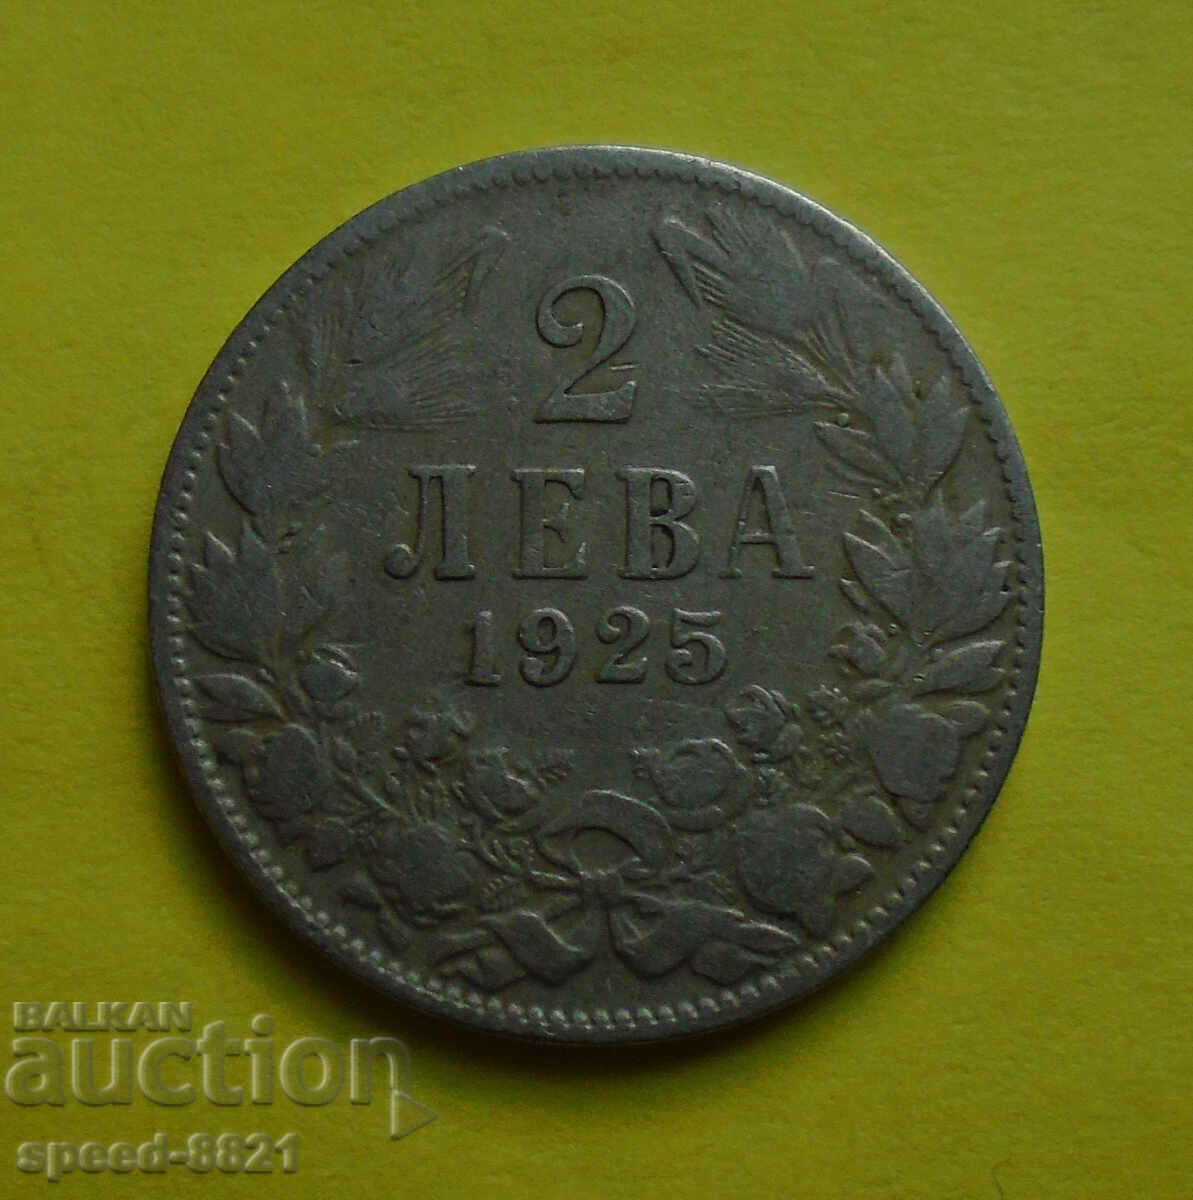 2 BGN 1925 coin Bulgaria